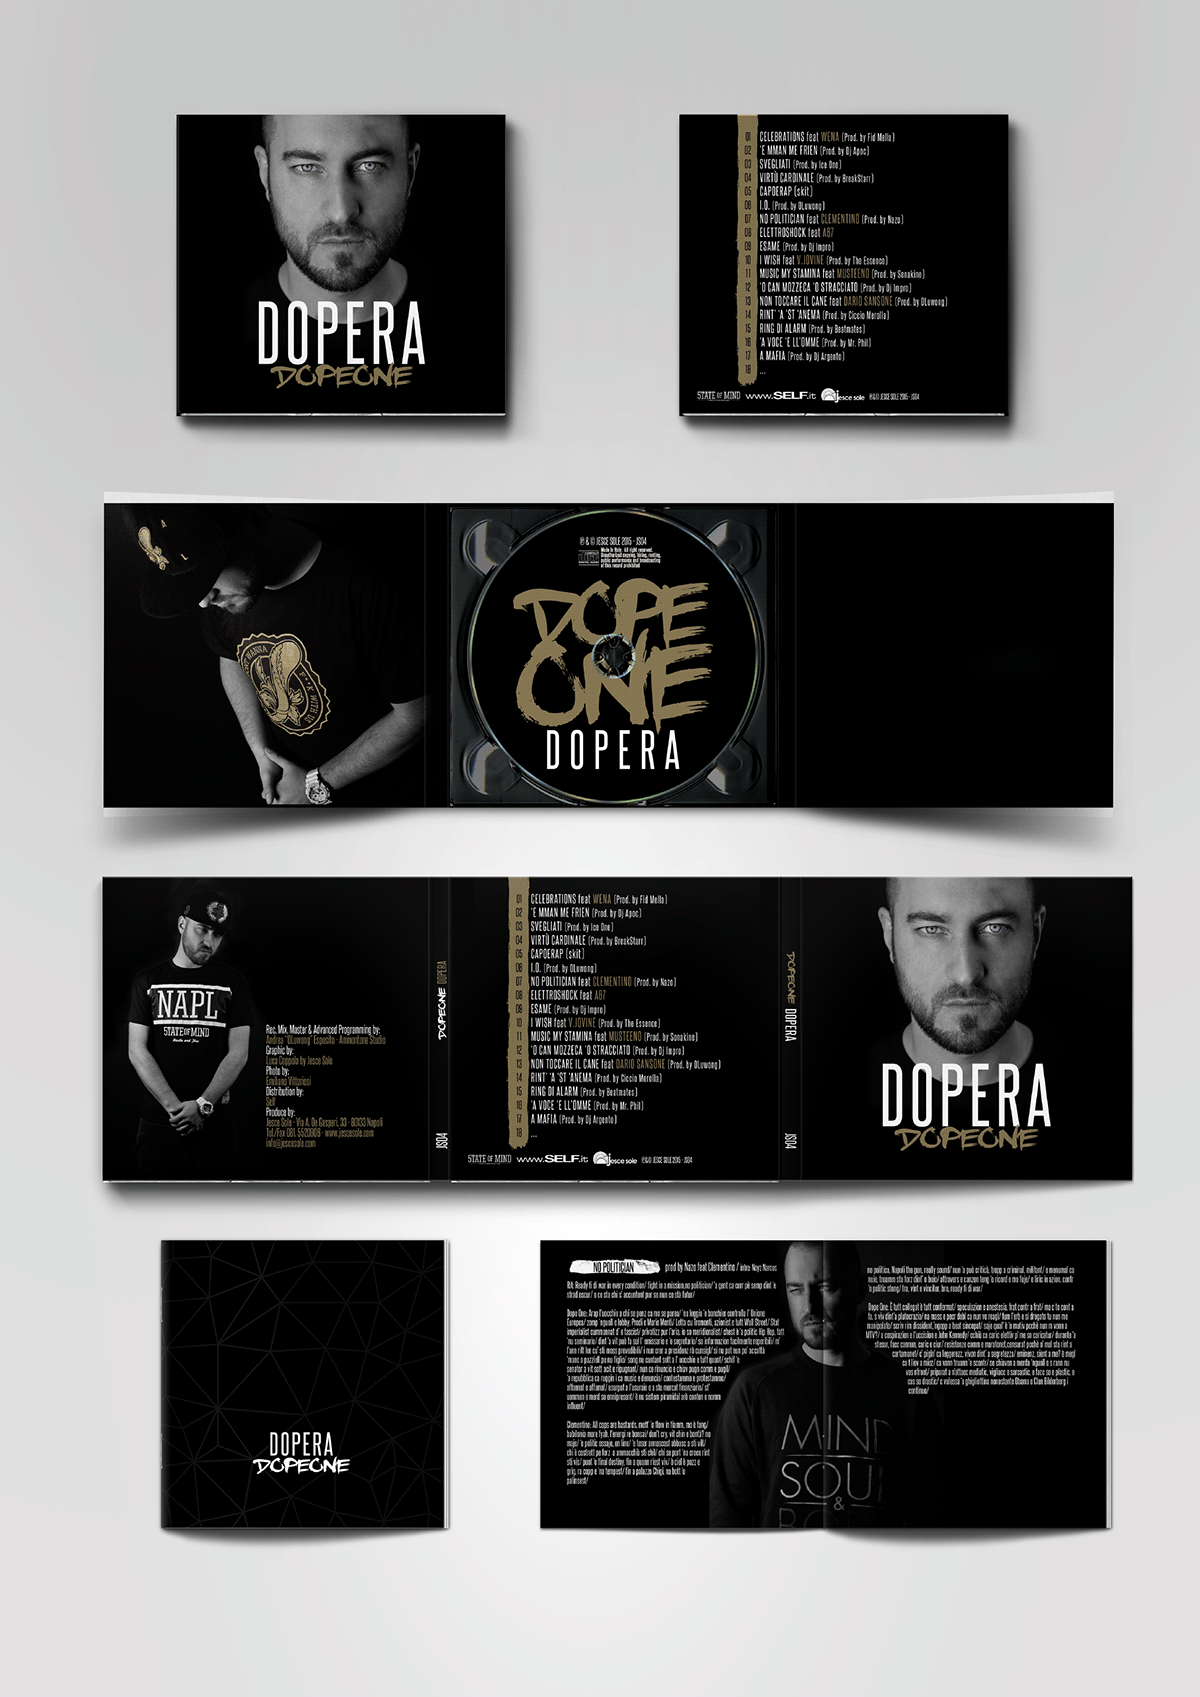 CD cover digipack